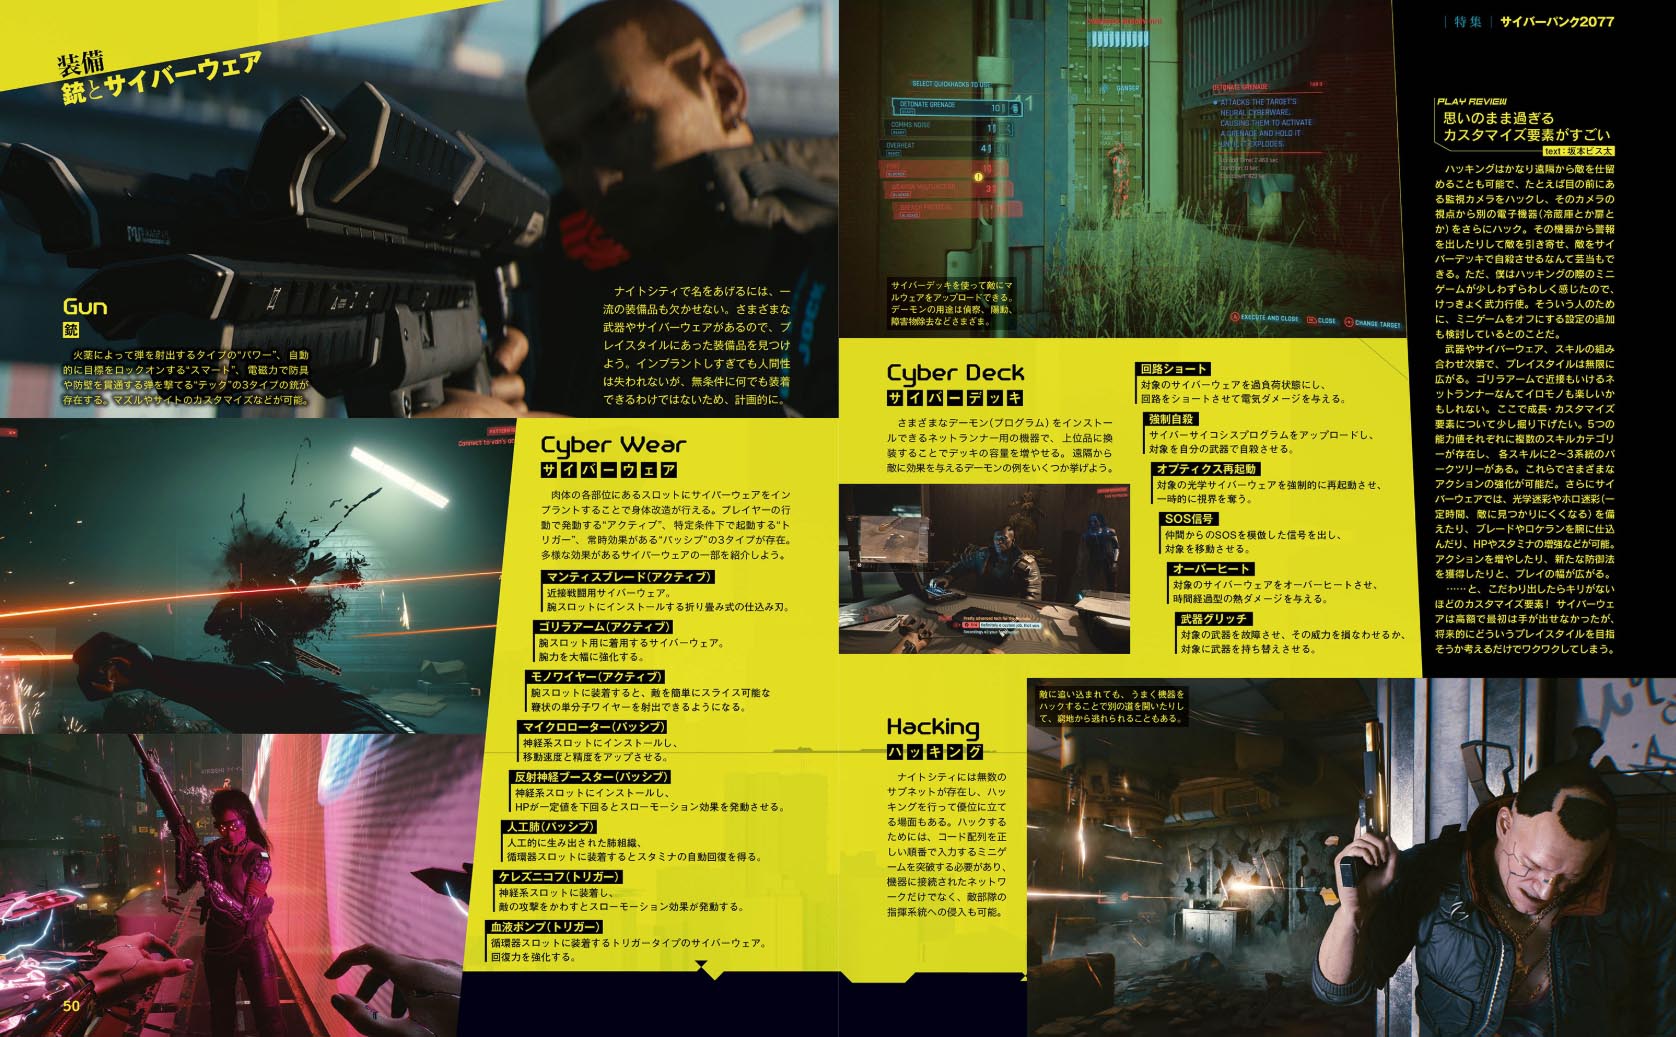 《電馭叛客2077》Fami通雜誌圖 有一些新畫面